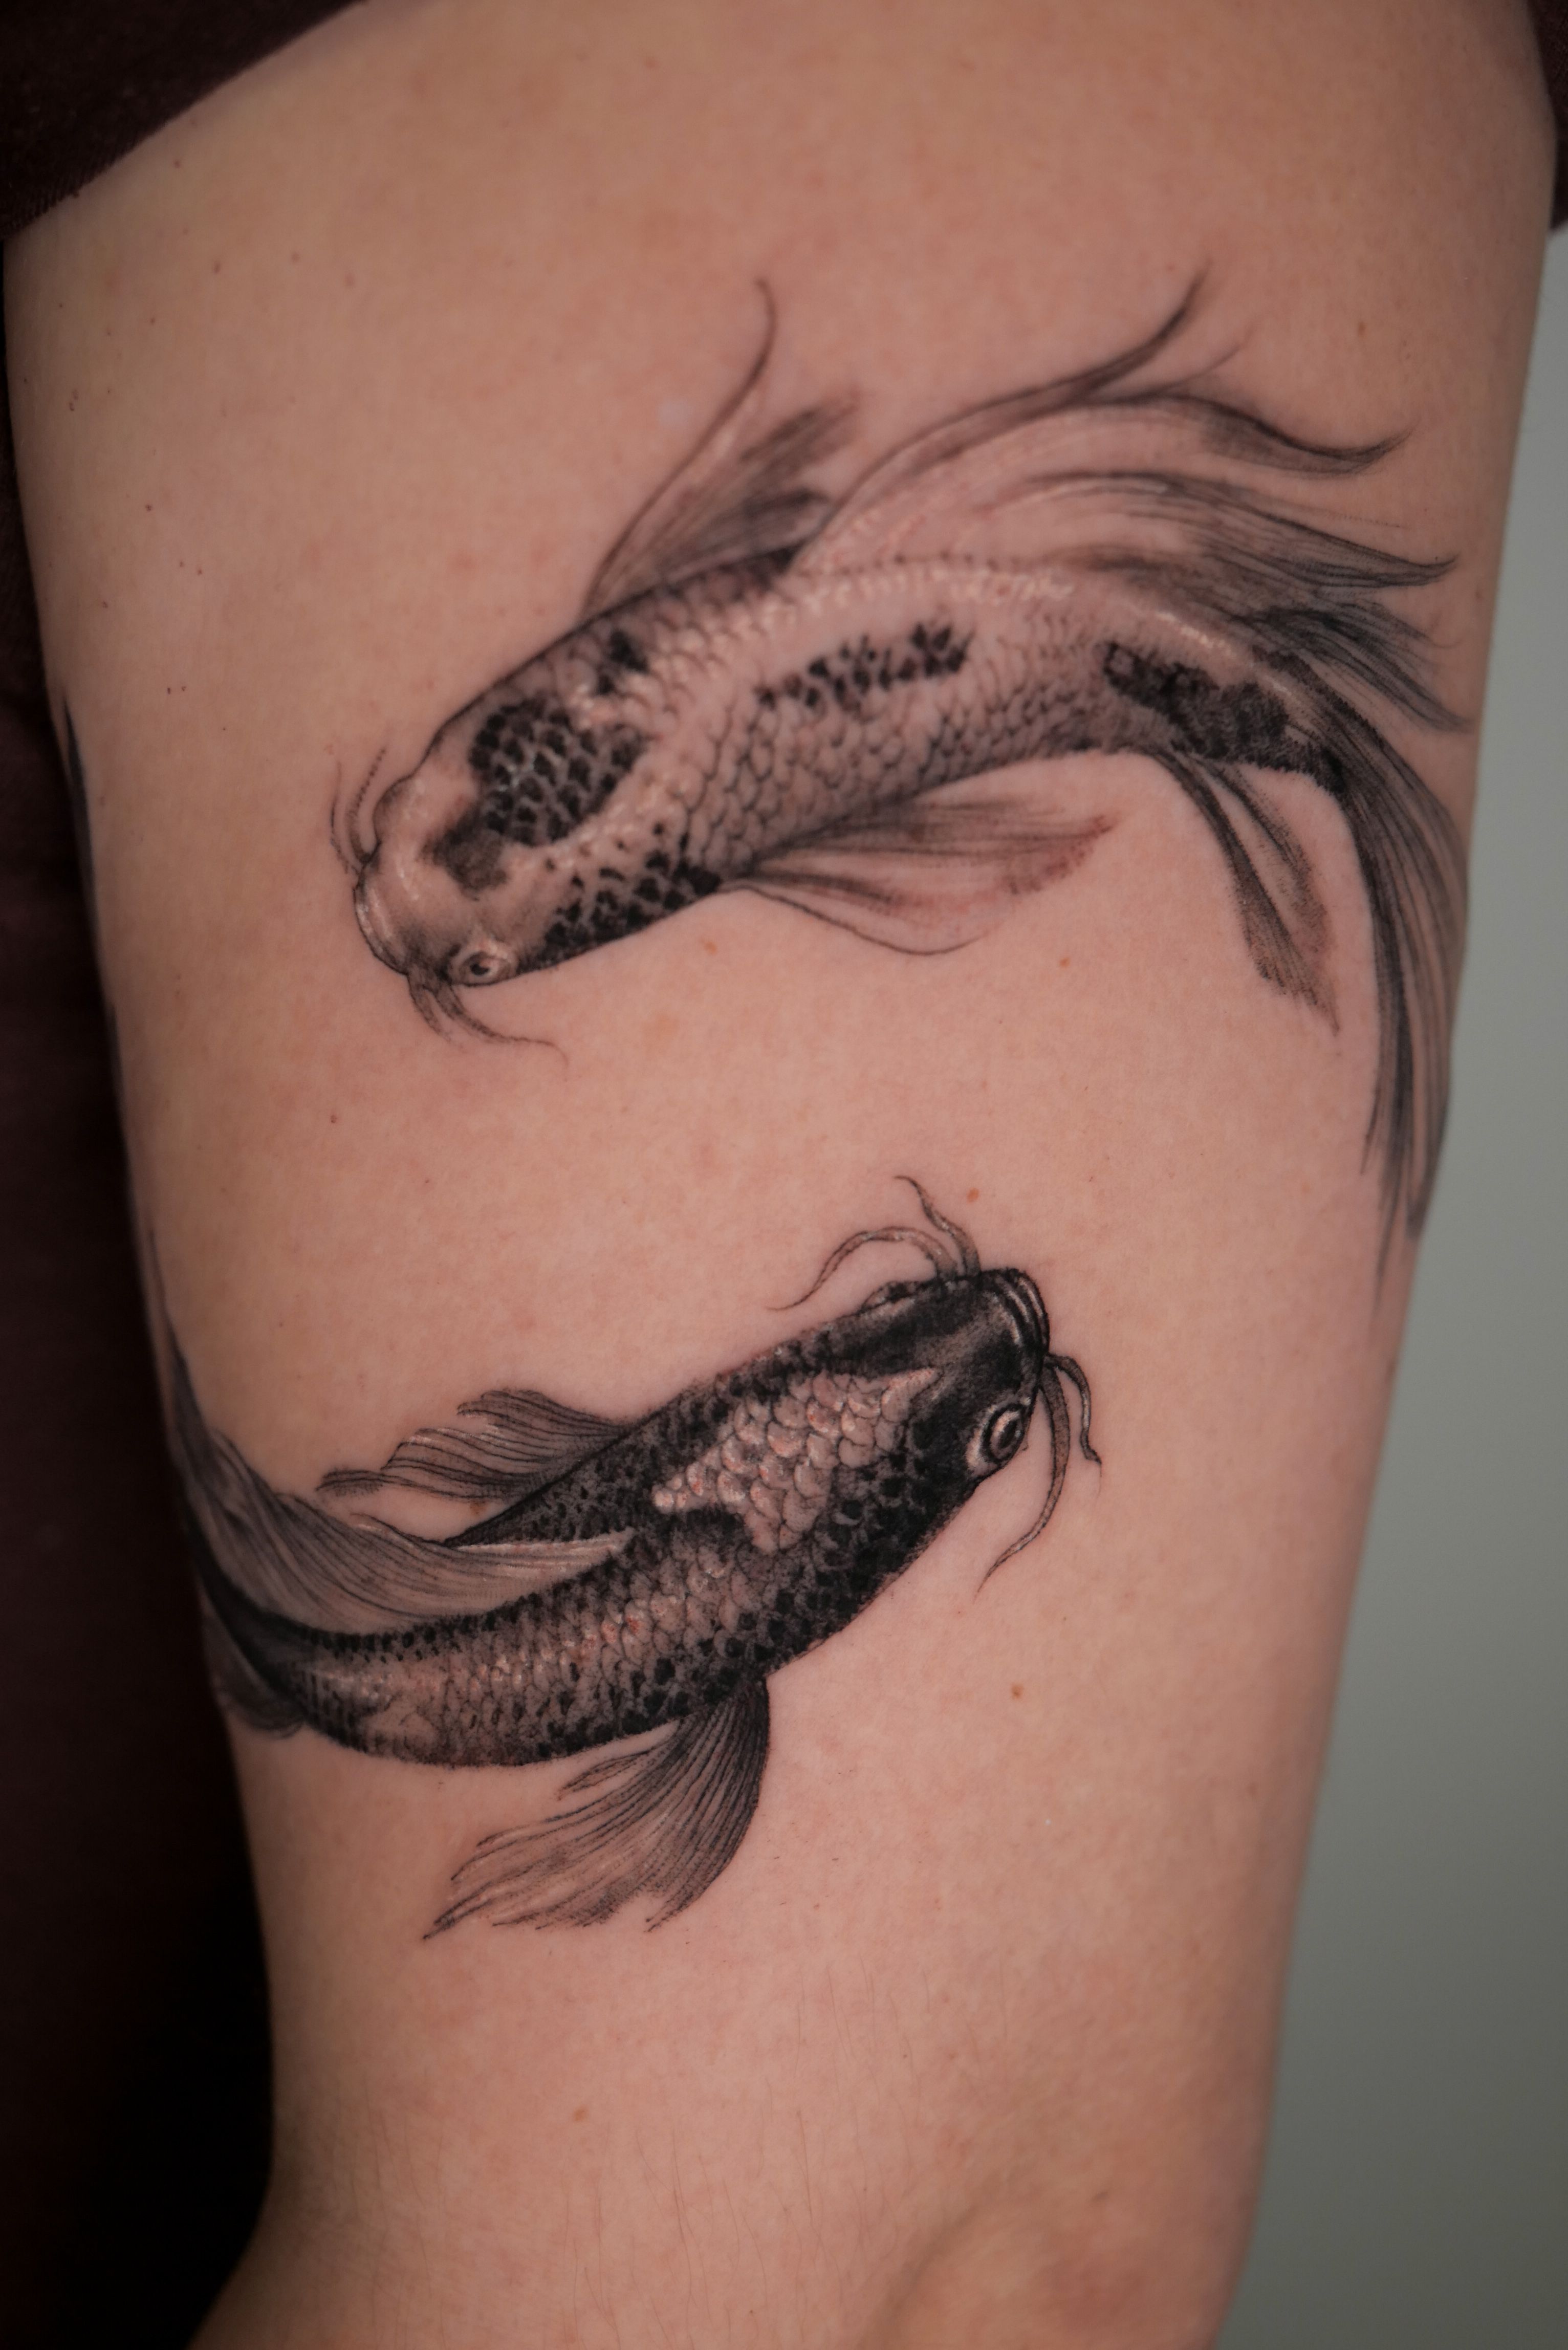 Fish hook tattoo design : r/TattooDesigns